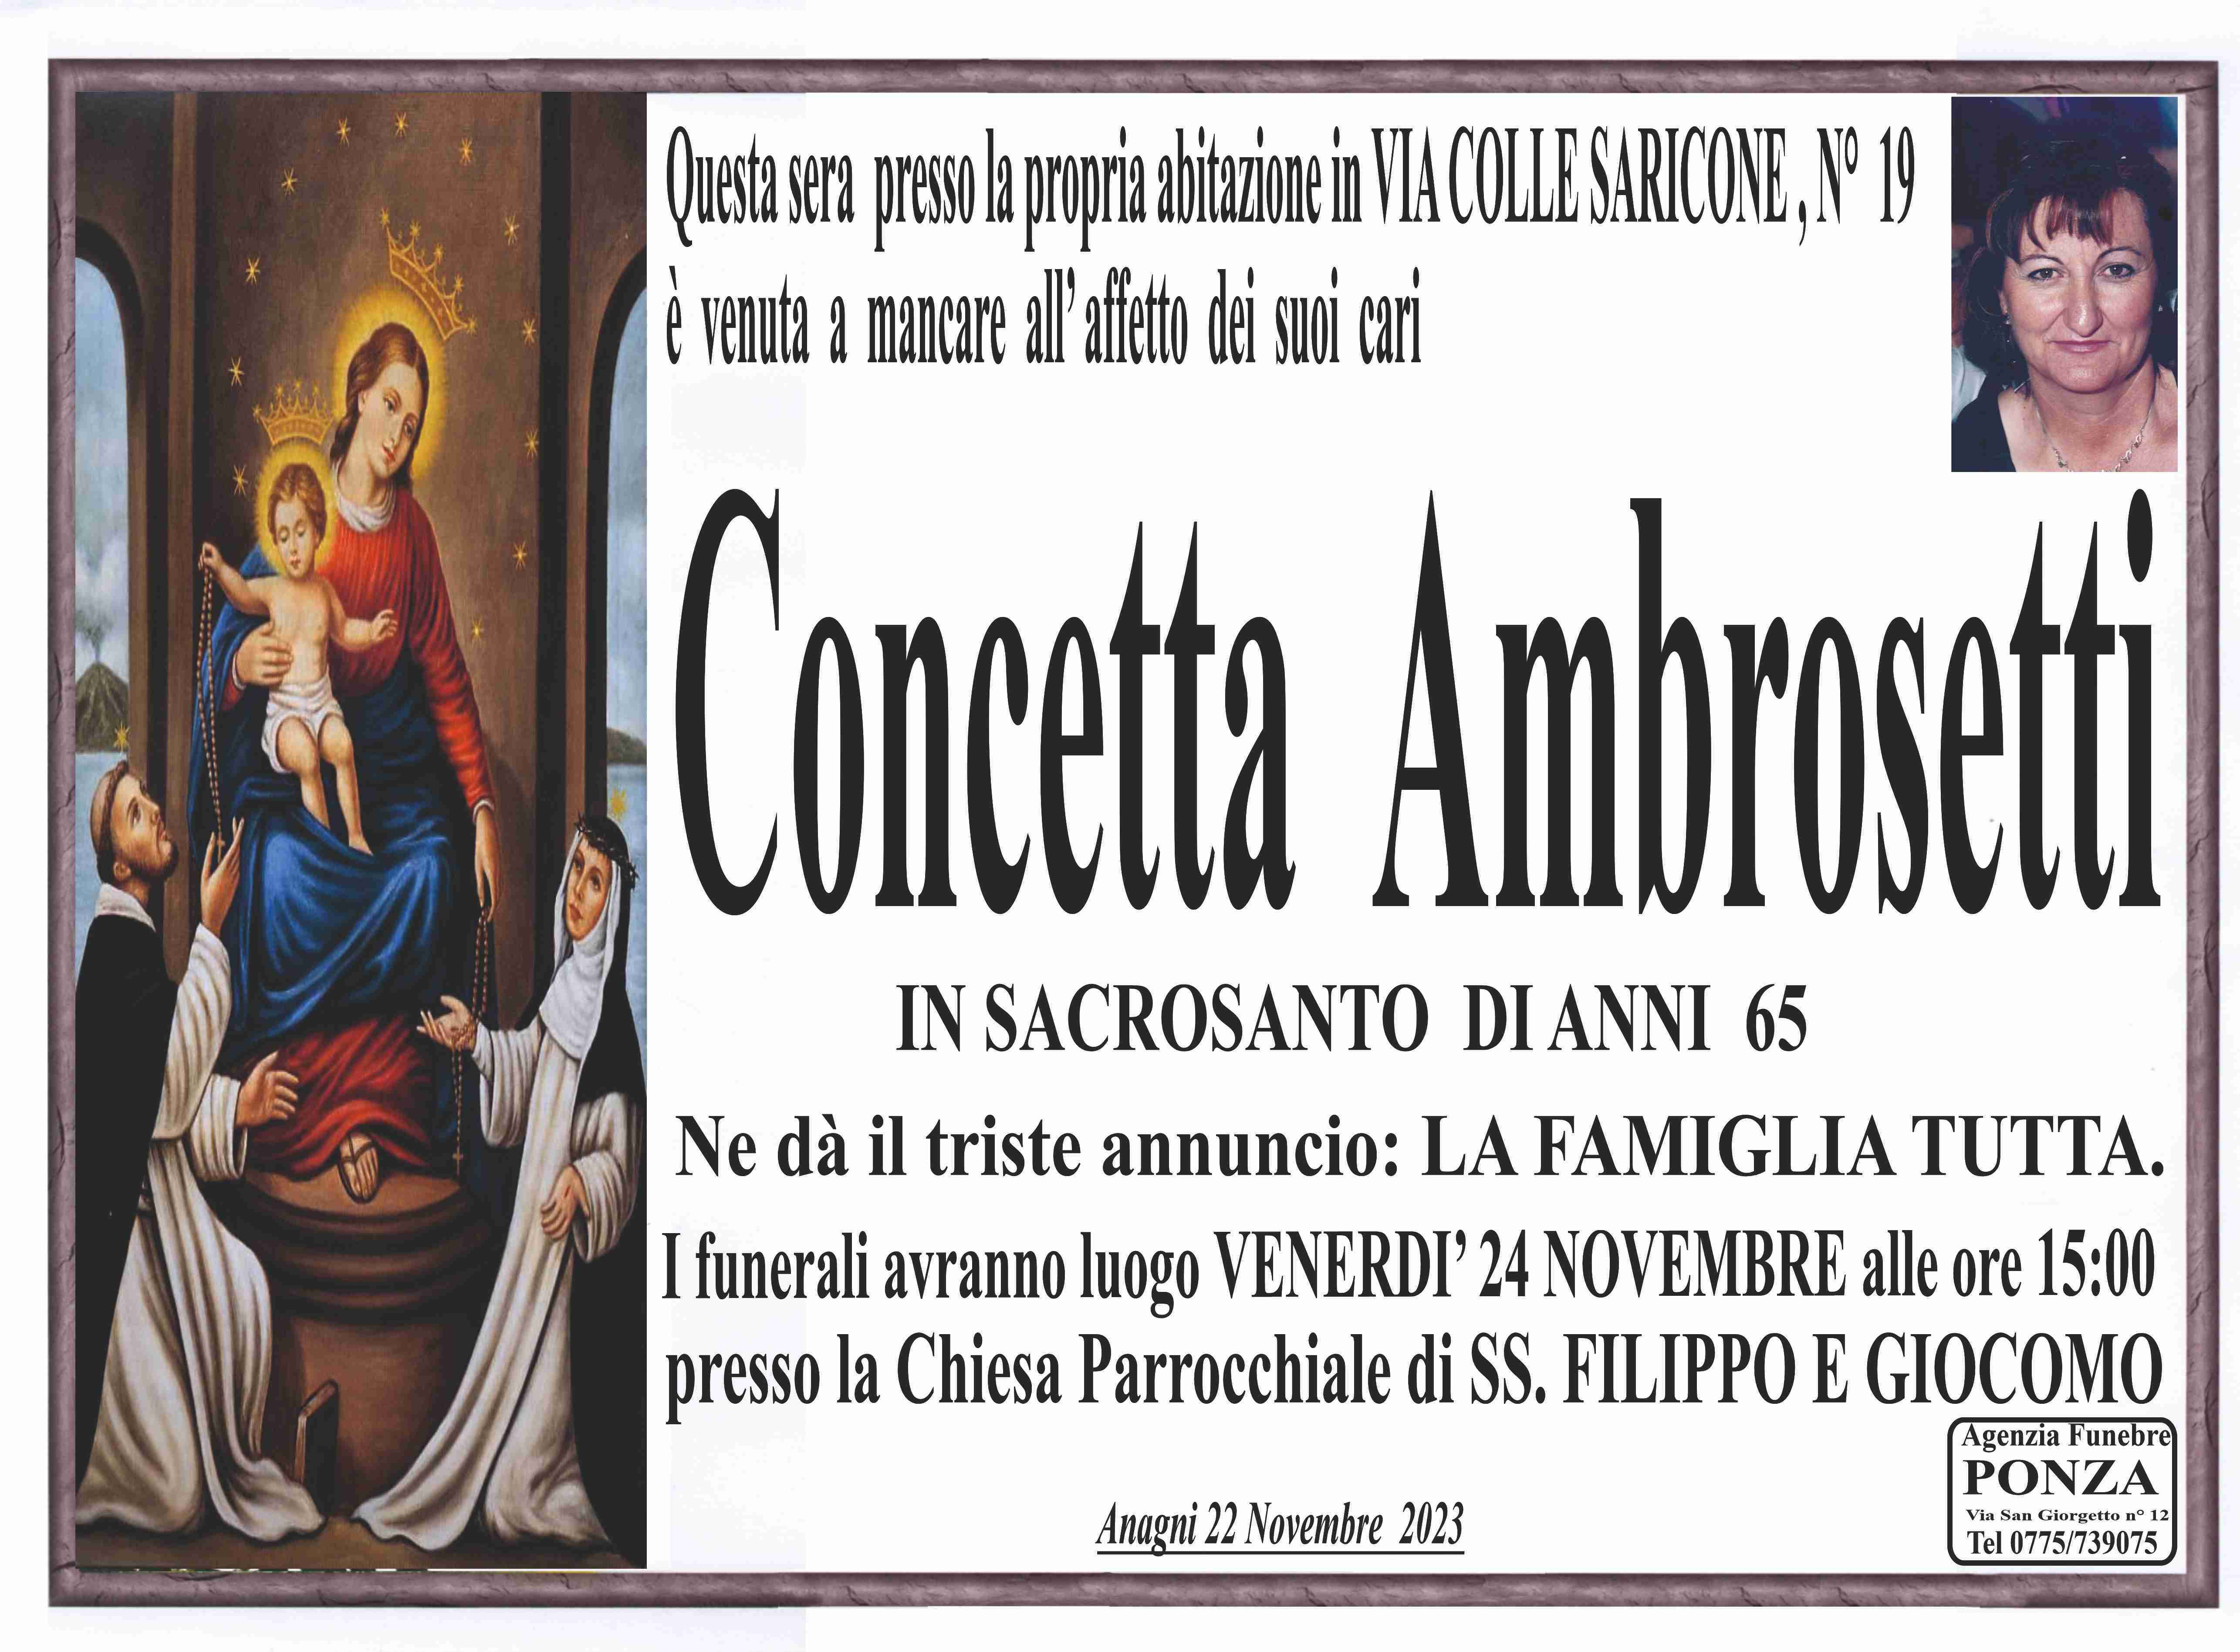 Concetta Ambrosetti